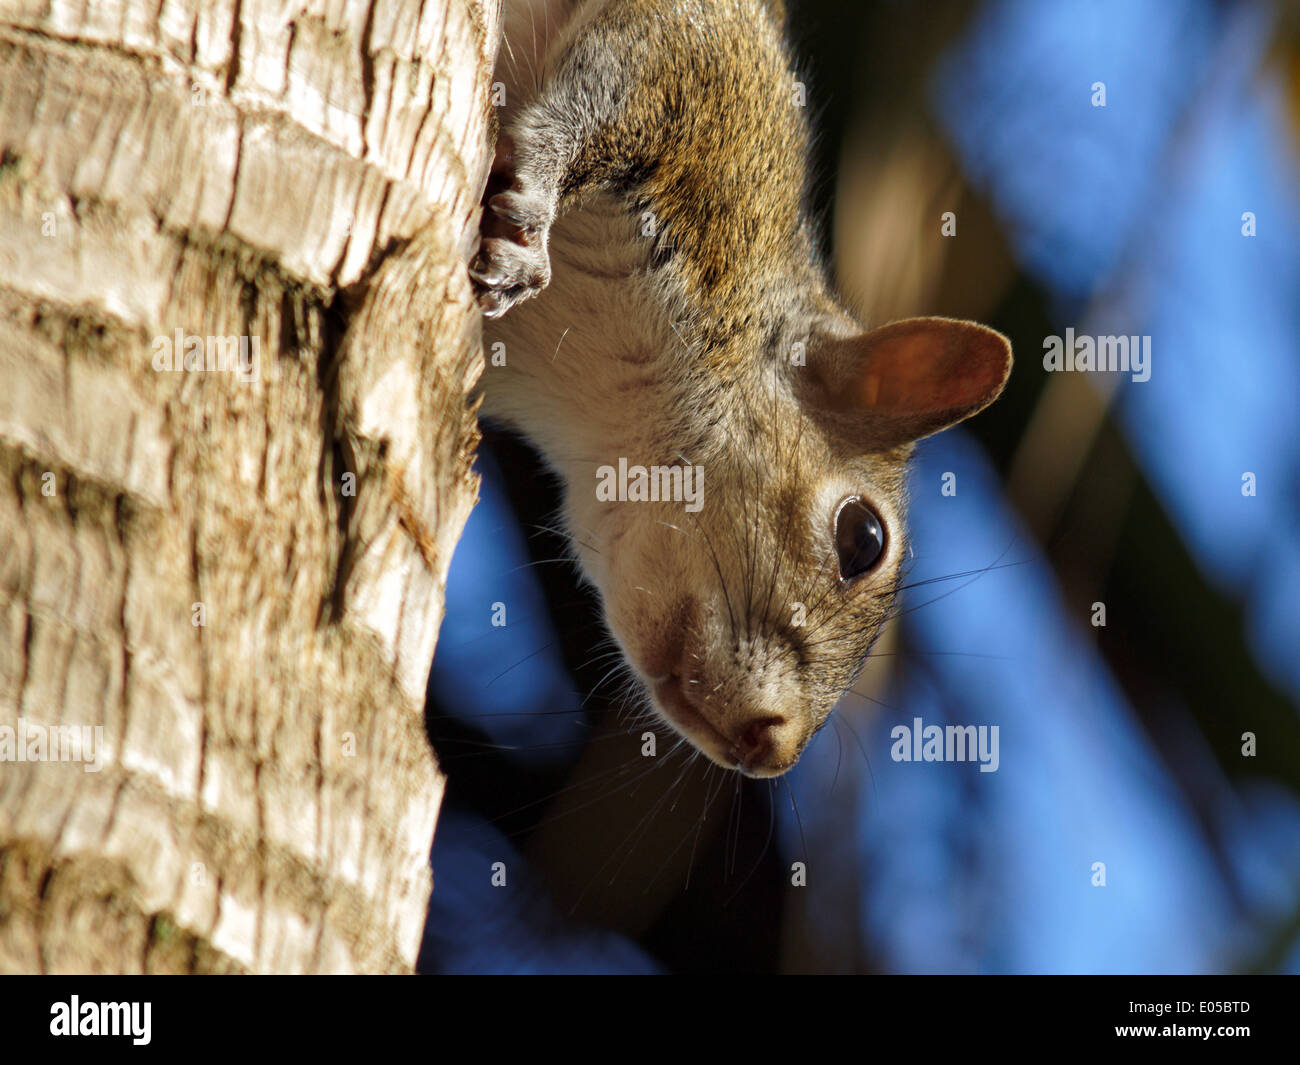 Gros plan extrême d'un écureuil dans profil accroché à un tronc d'arbre, la tête en bas. Banque D'Images